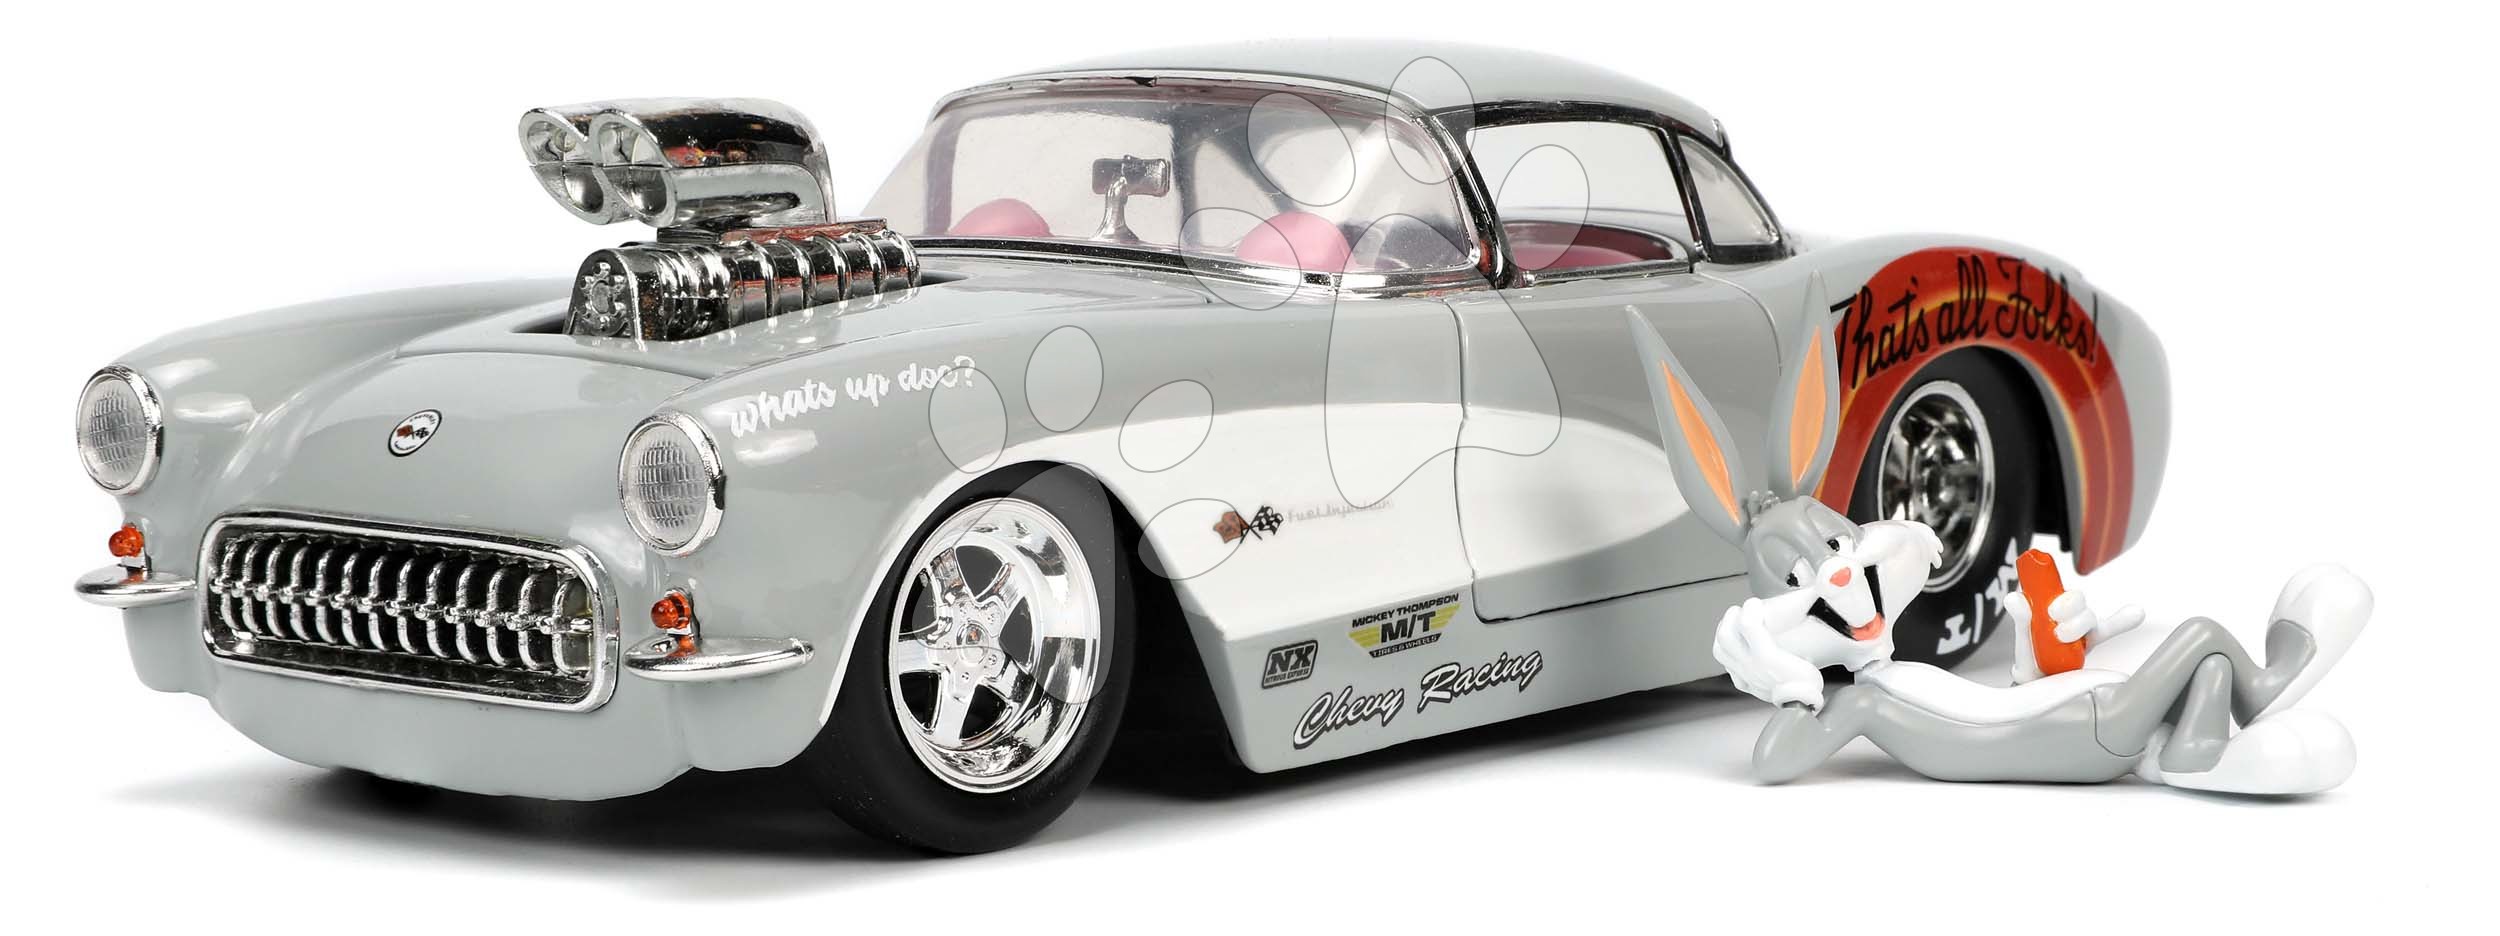 Kisautó Looney Tunes Chevrolet Corvette 1957 Jada fém niytható részekkel és Bugs Bunny figurával hossza 19 cm 1:24